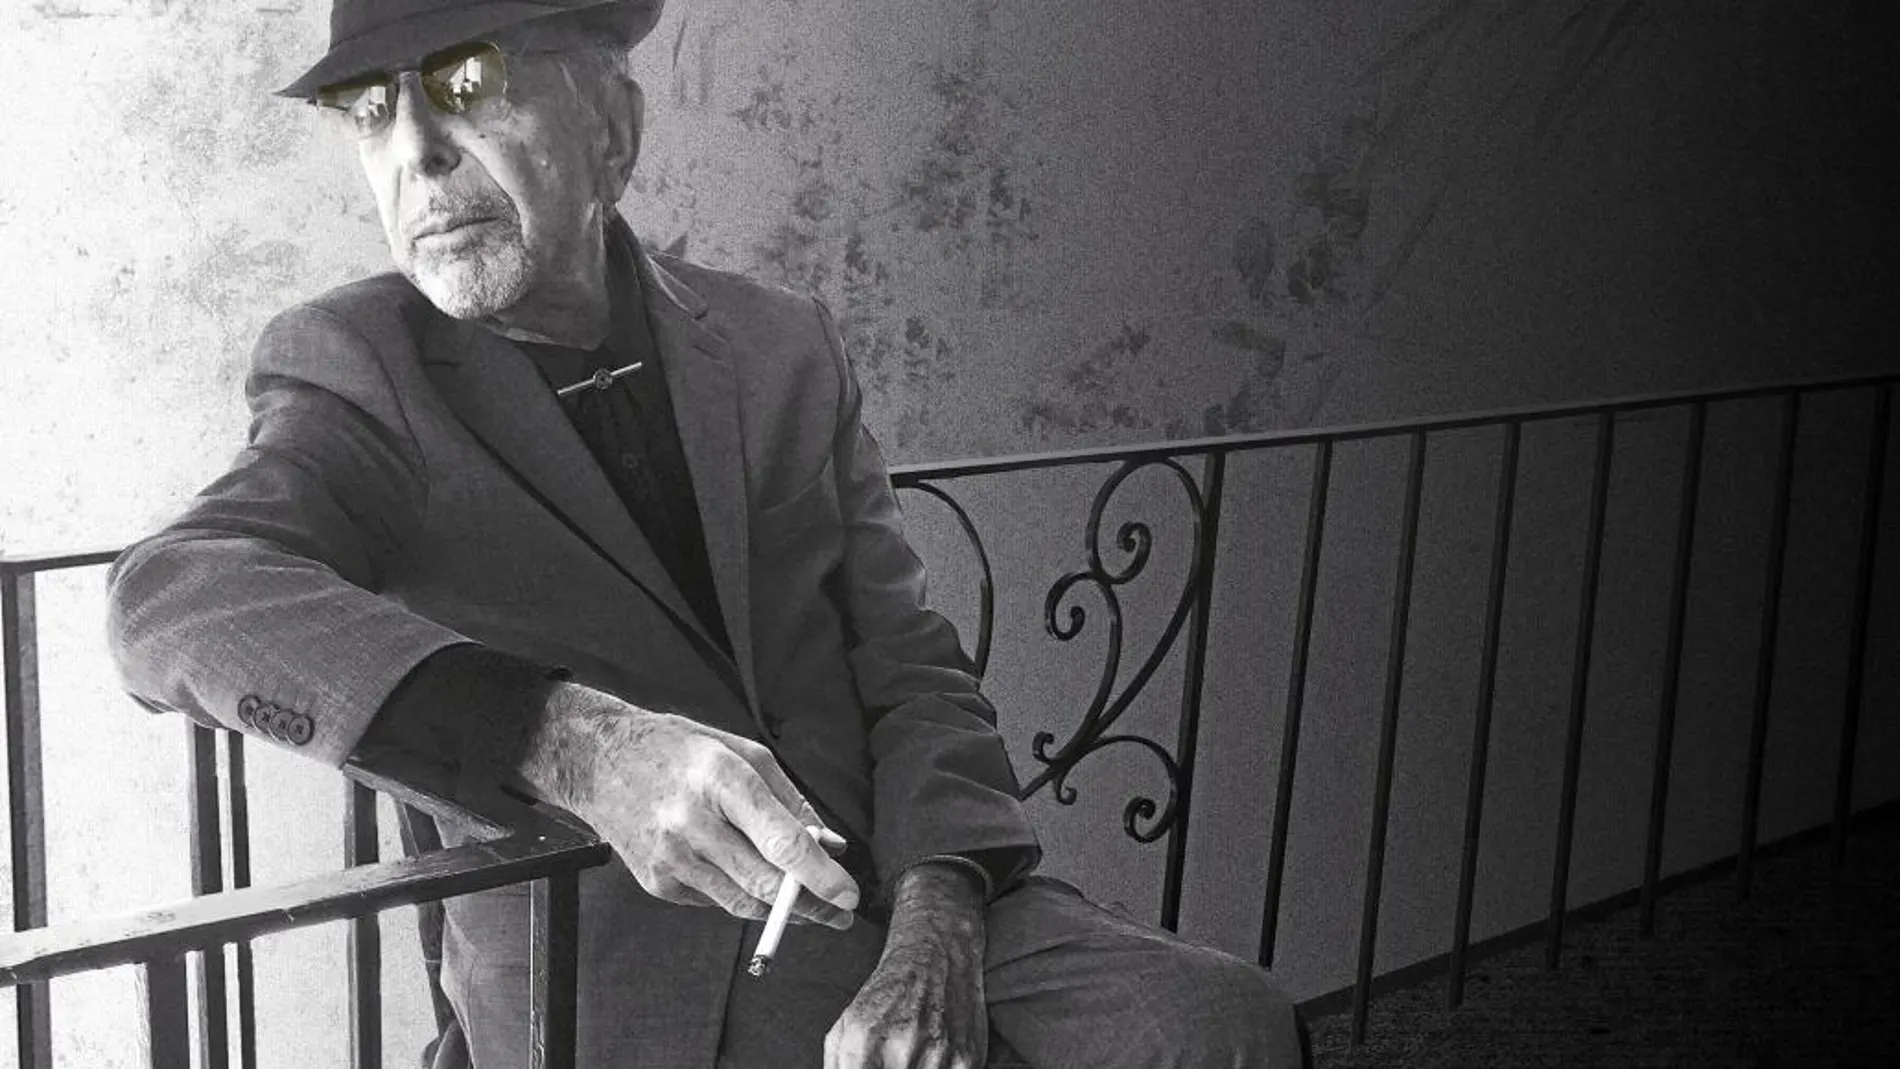 Cohen aparece fumando (cuando lo tenía prohibido) en una imagen promocional de su último disco